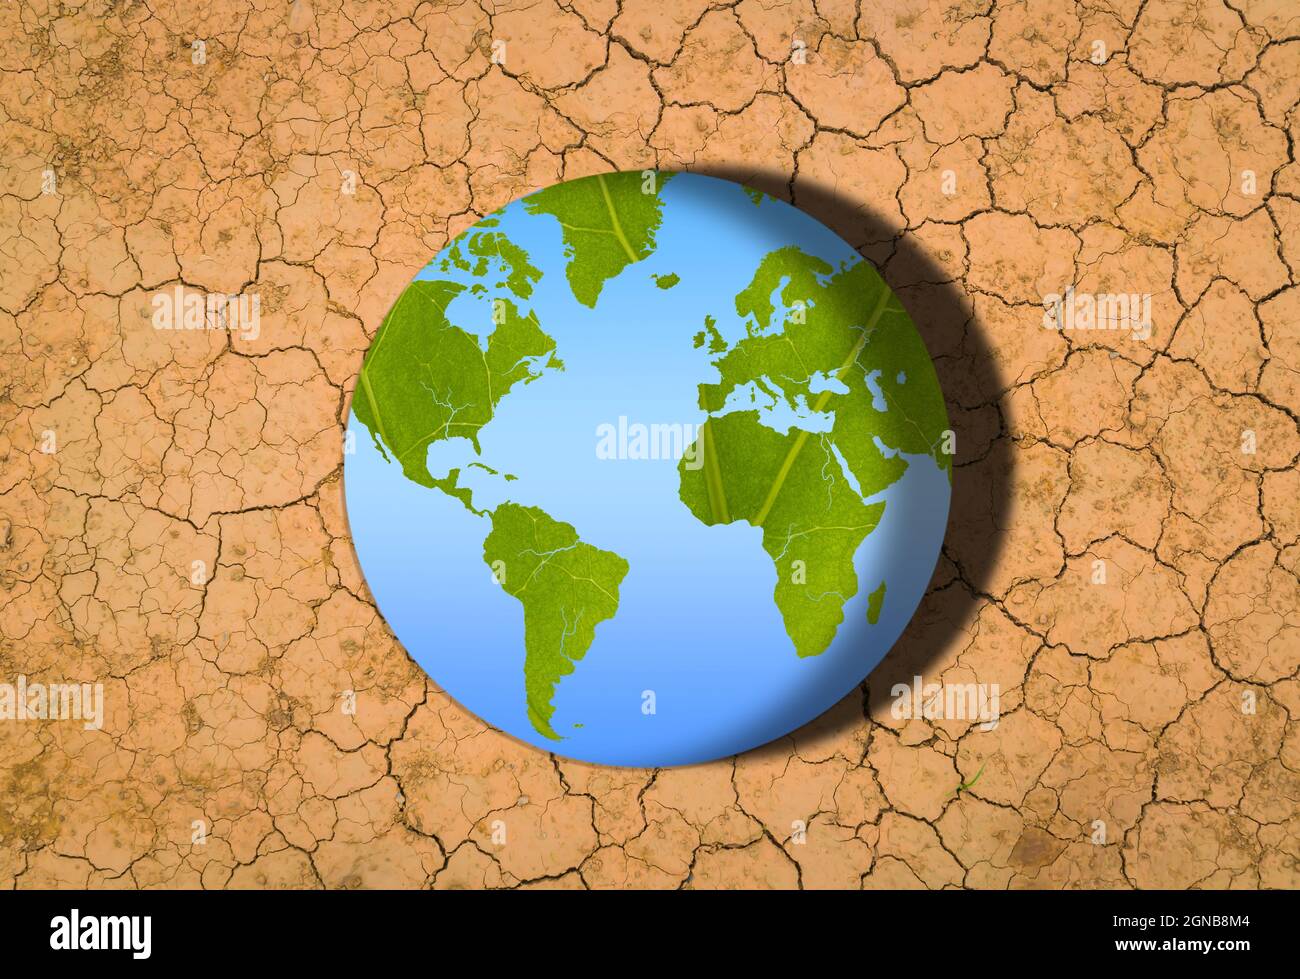 Journée mondiale de l'environnement changement climatique. La texture verte d'une feuille se transforme en sol sec brûlé par le soleil Banque D'Images